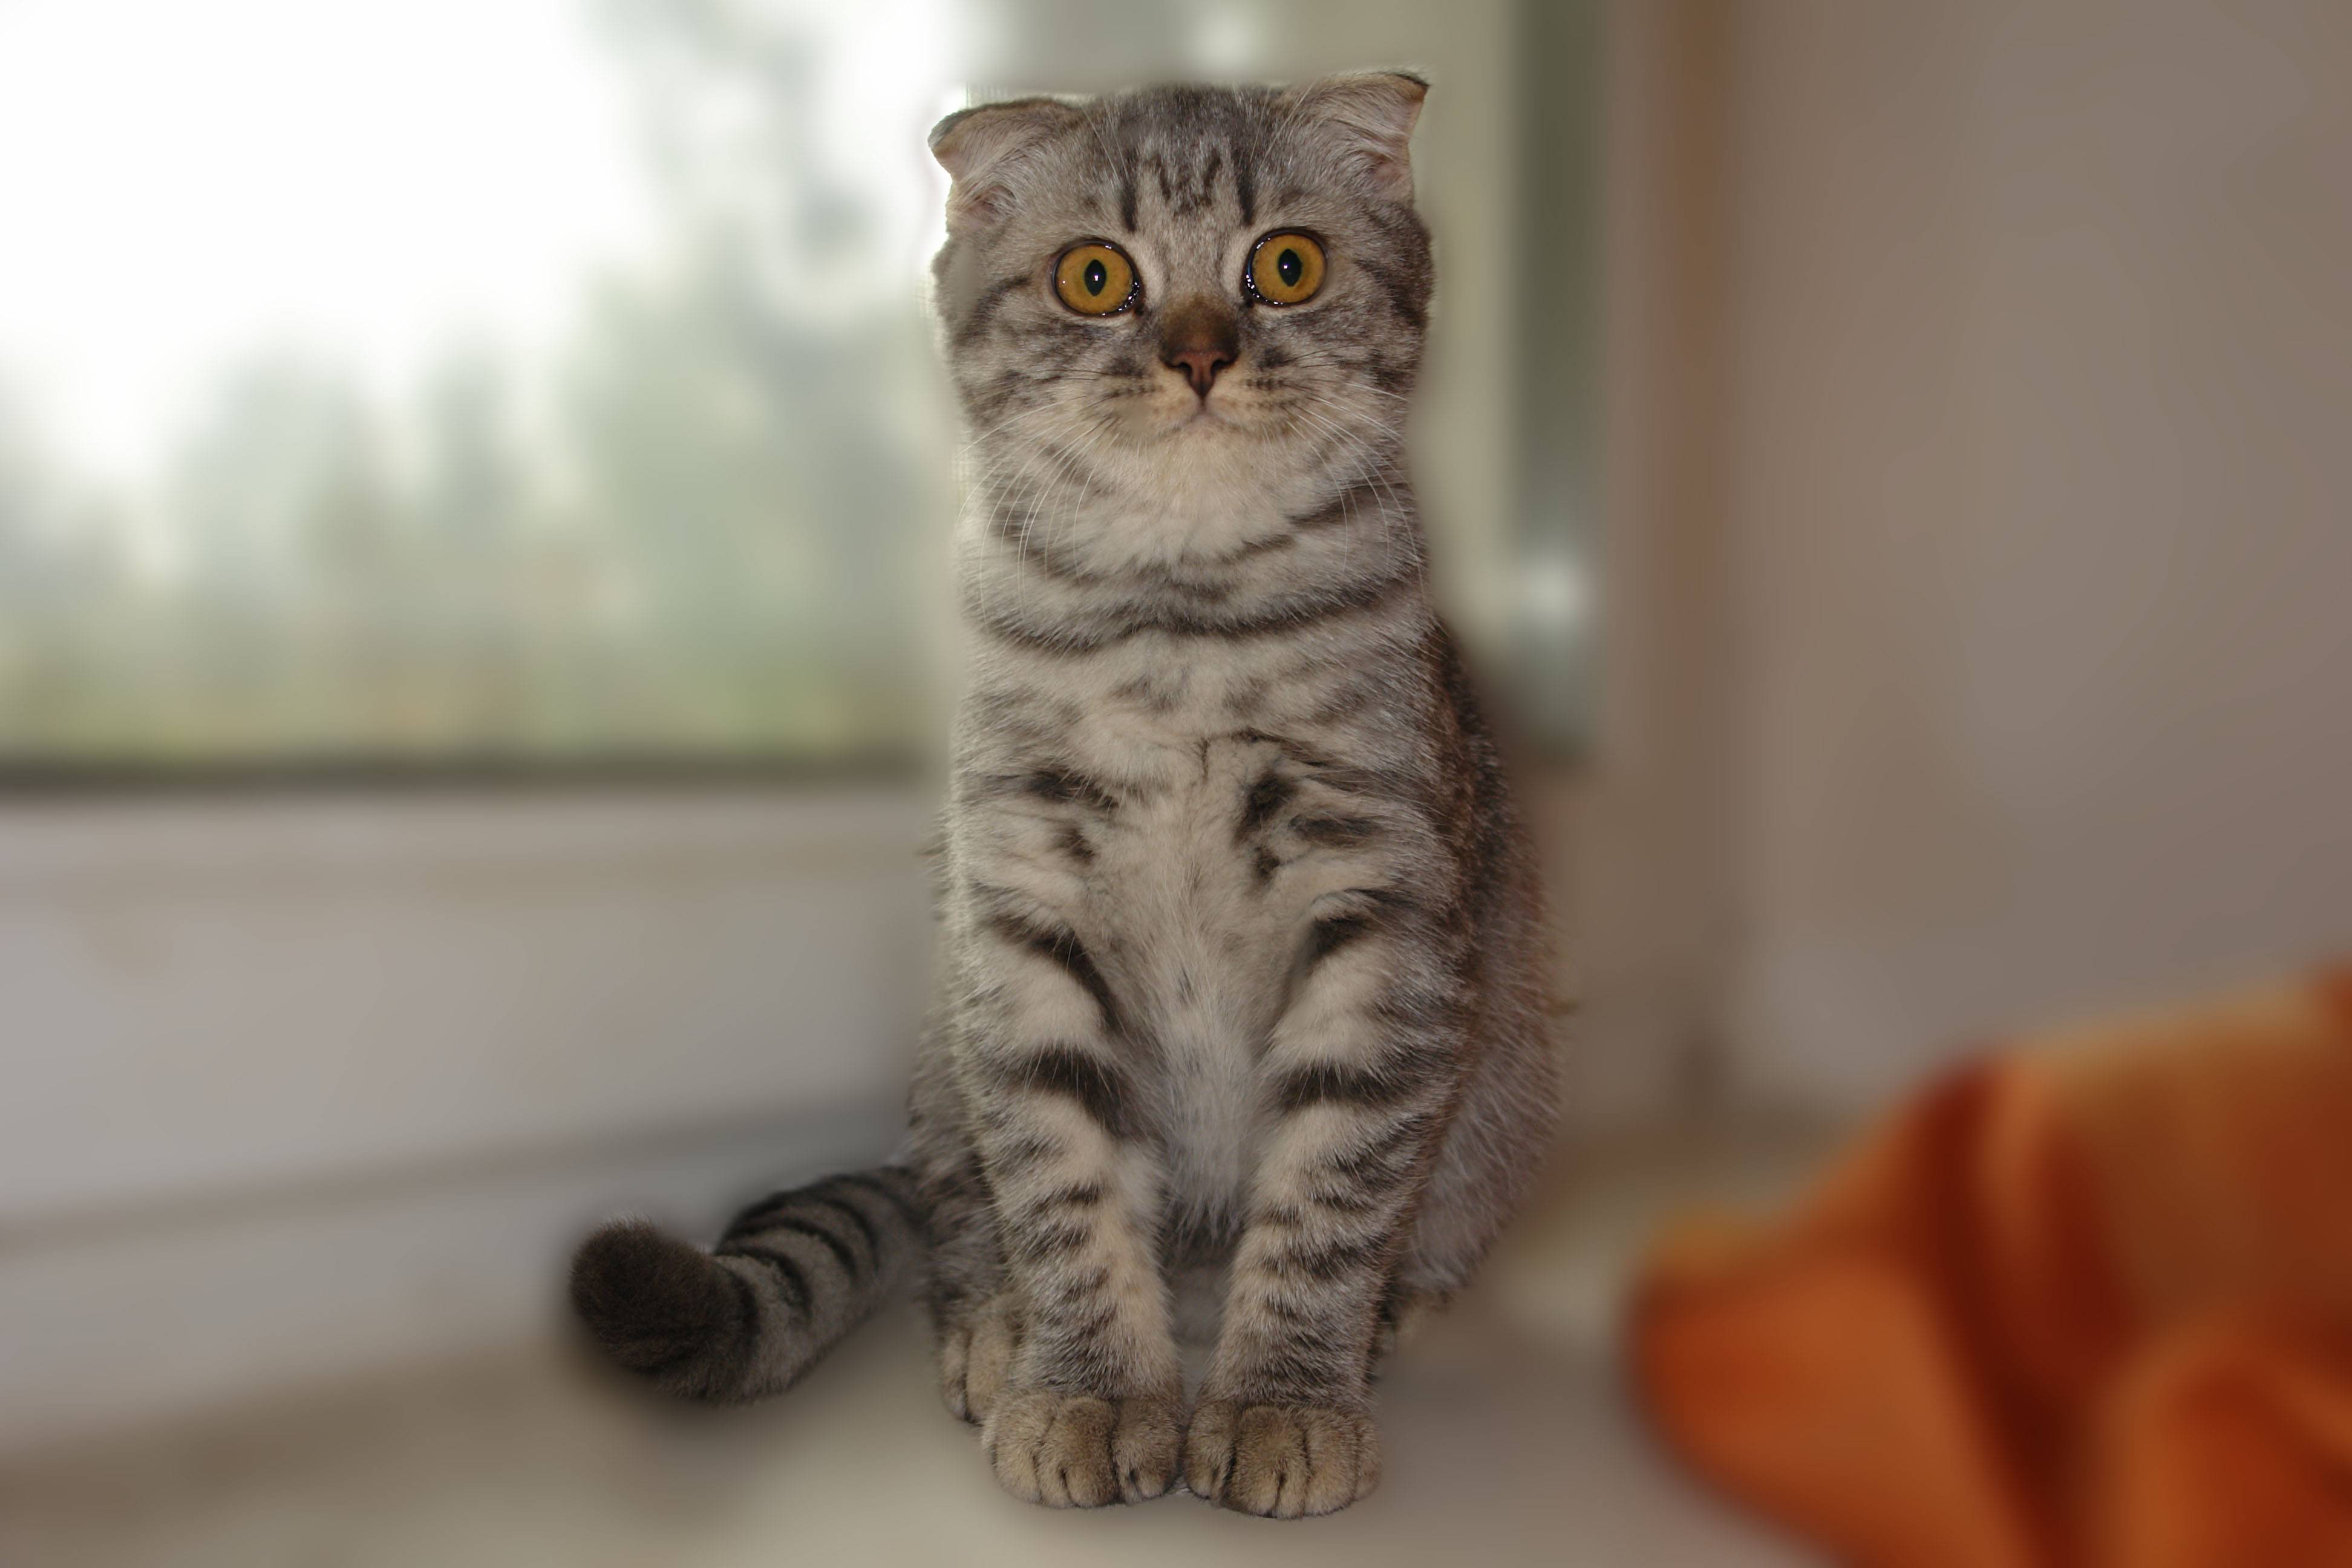 Шотландский вислоухий кот (фото): комок счастья